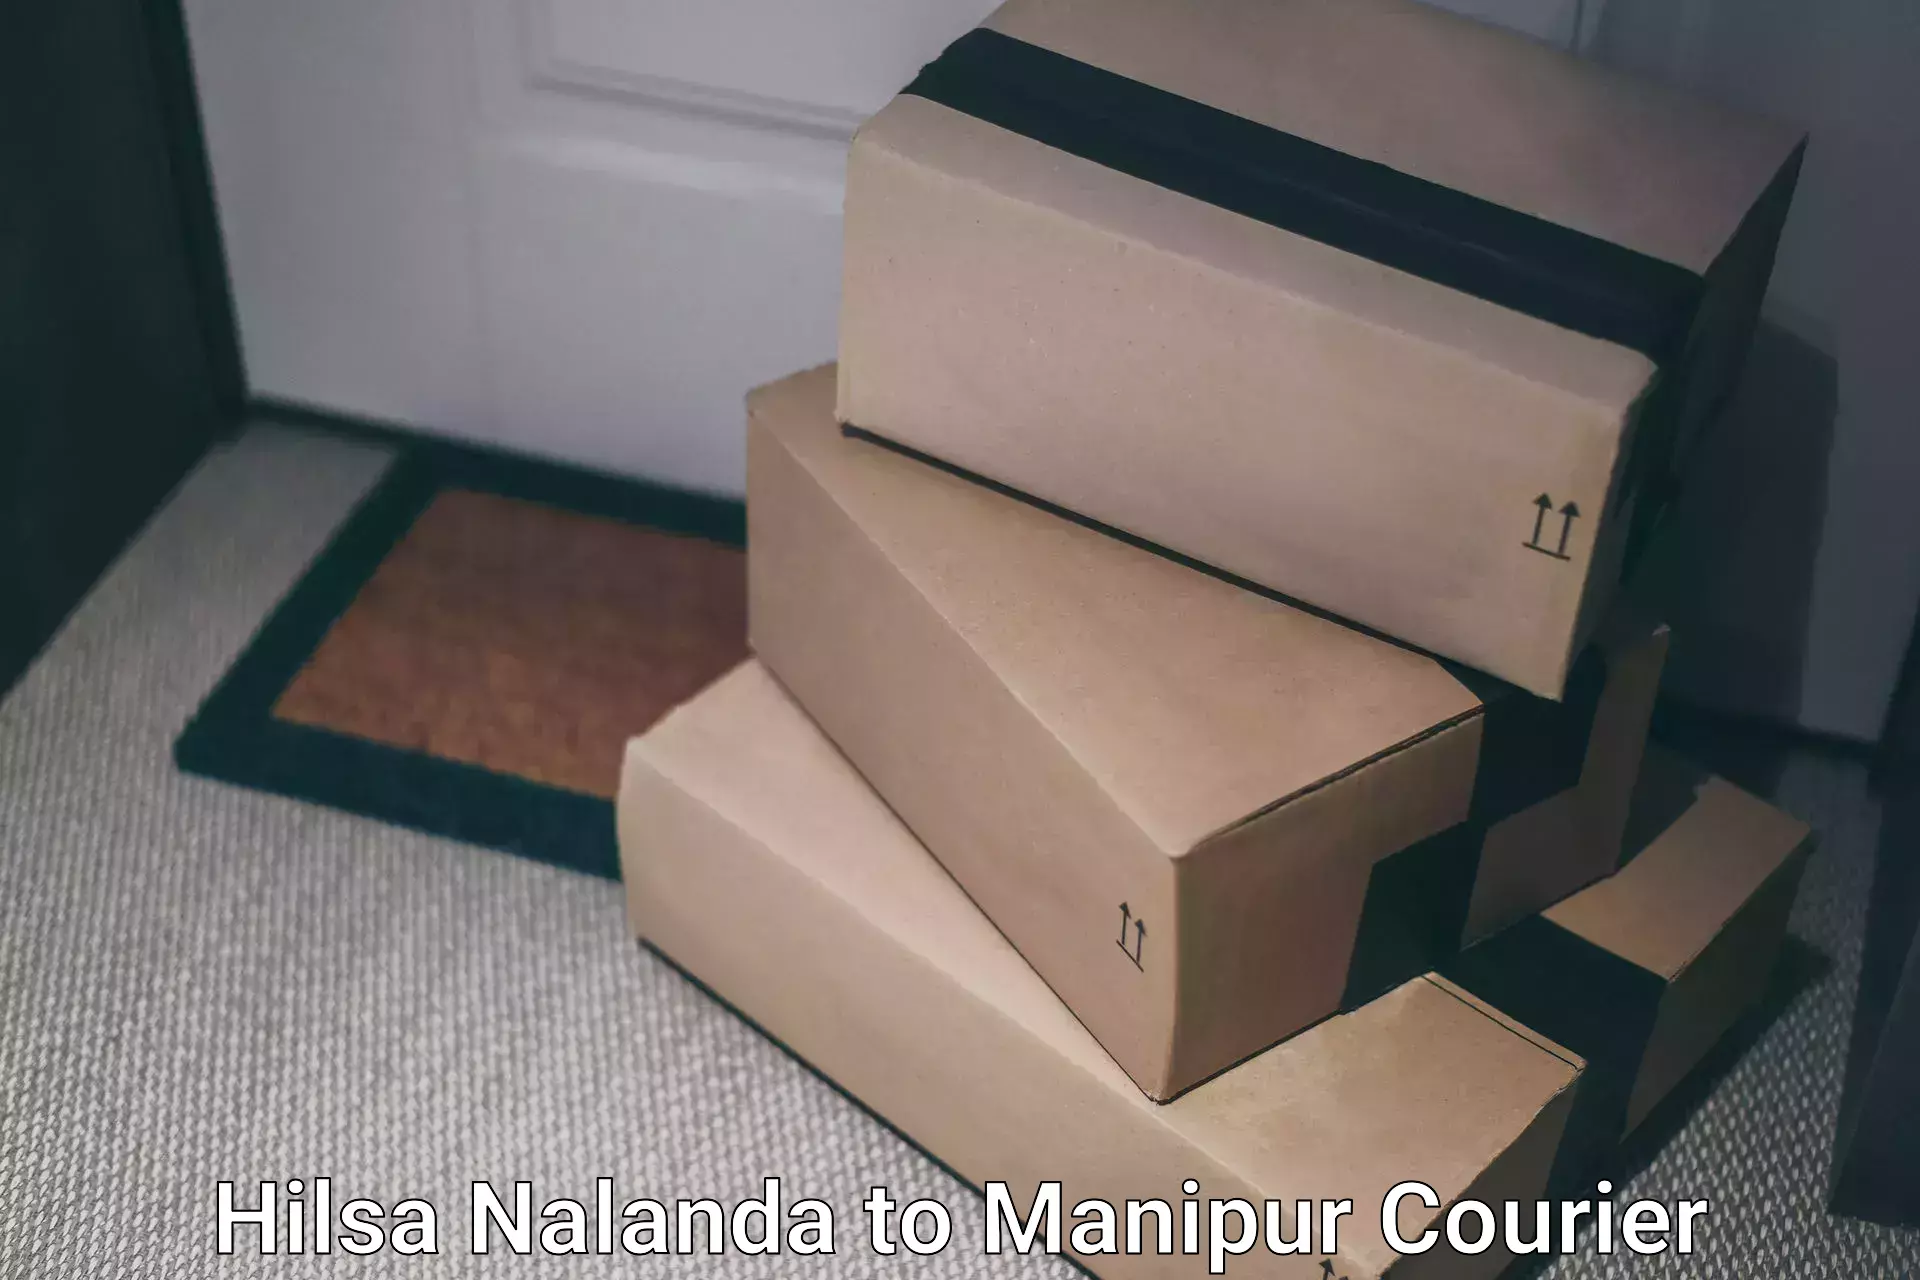 Quality courier services Hilsa Nalanda to Imphal